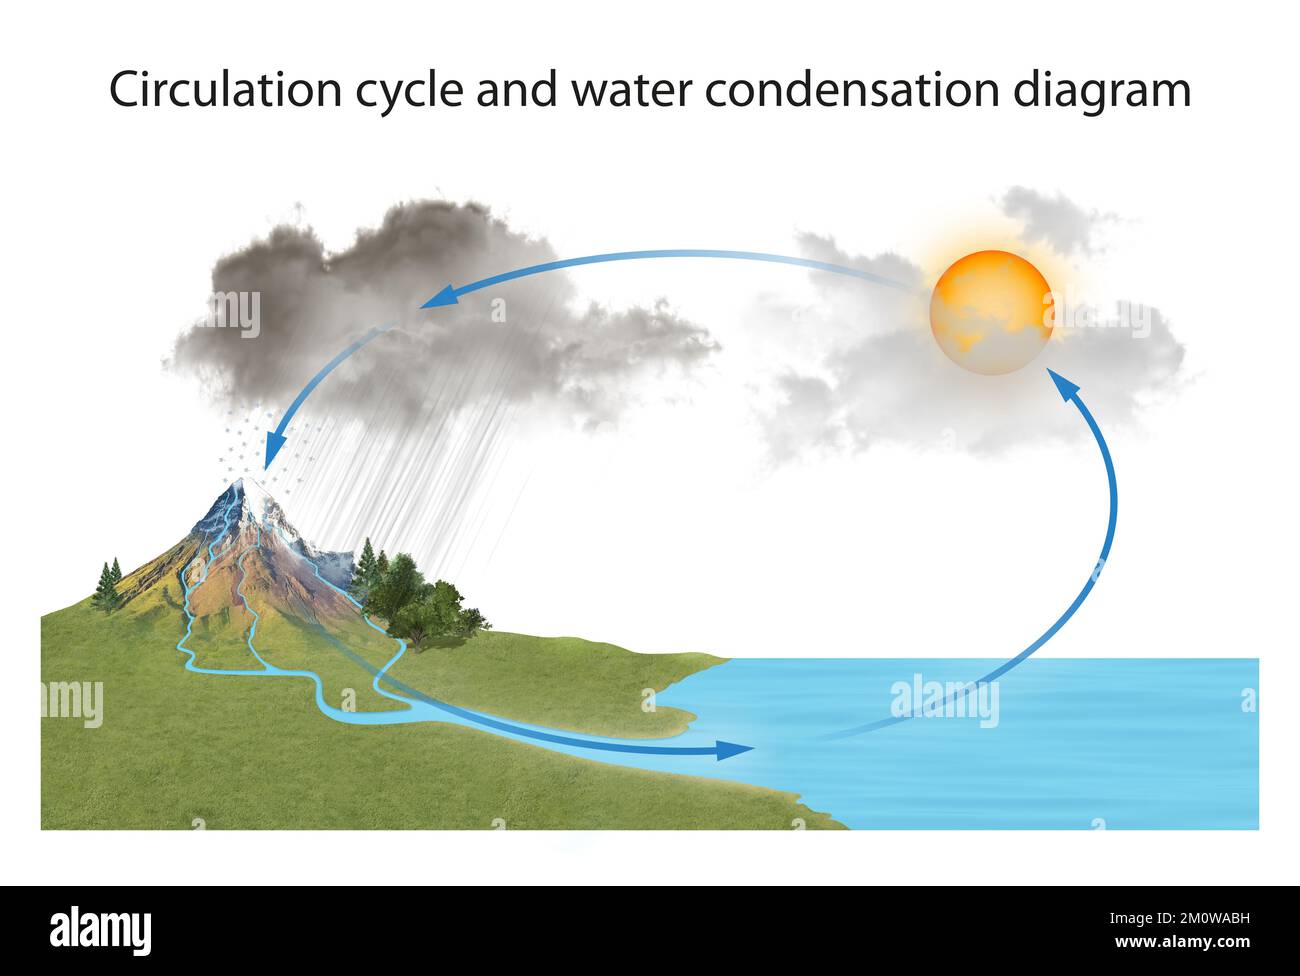 Diagramma del ciclo di circolazione e della condensazione dell'acqua Foto Stock